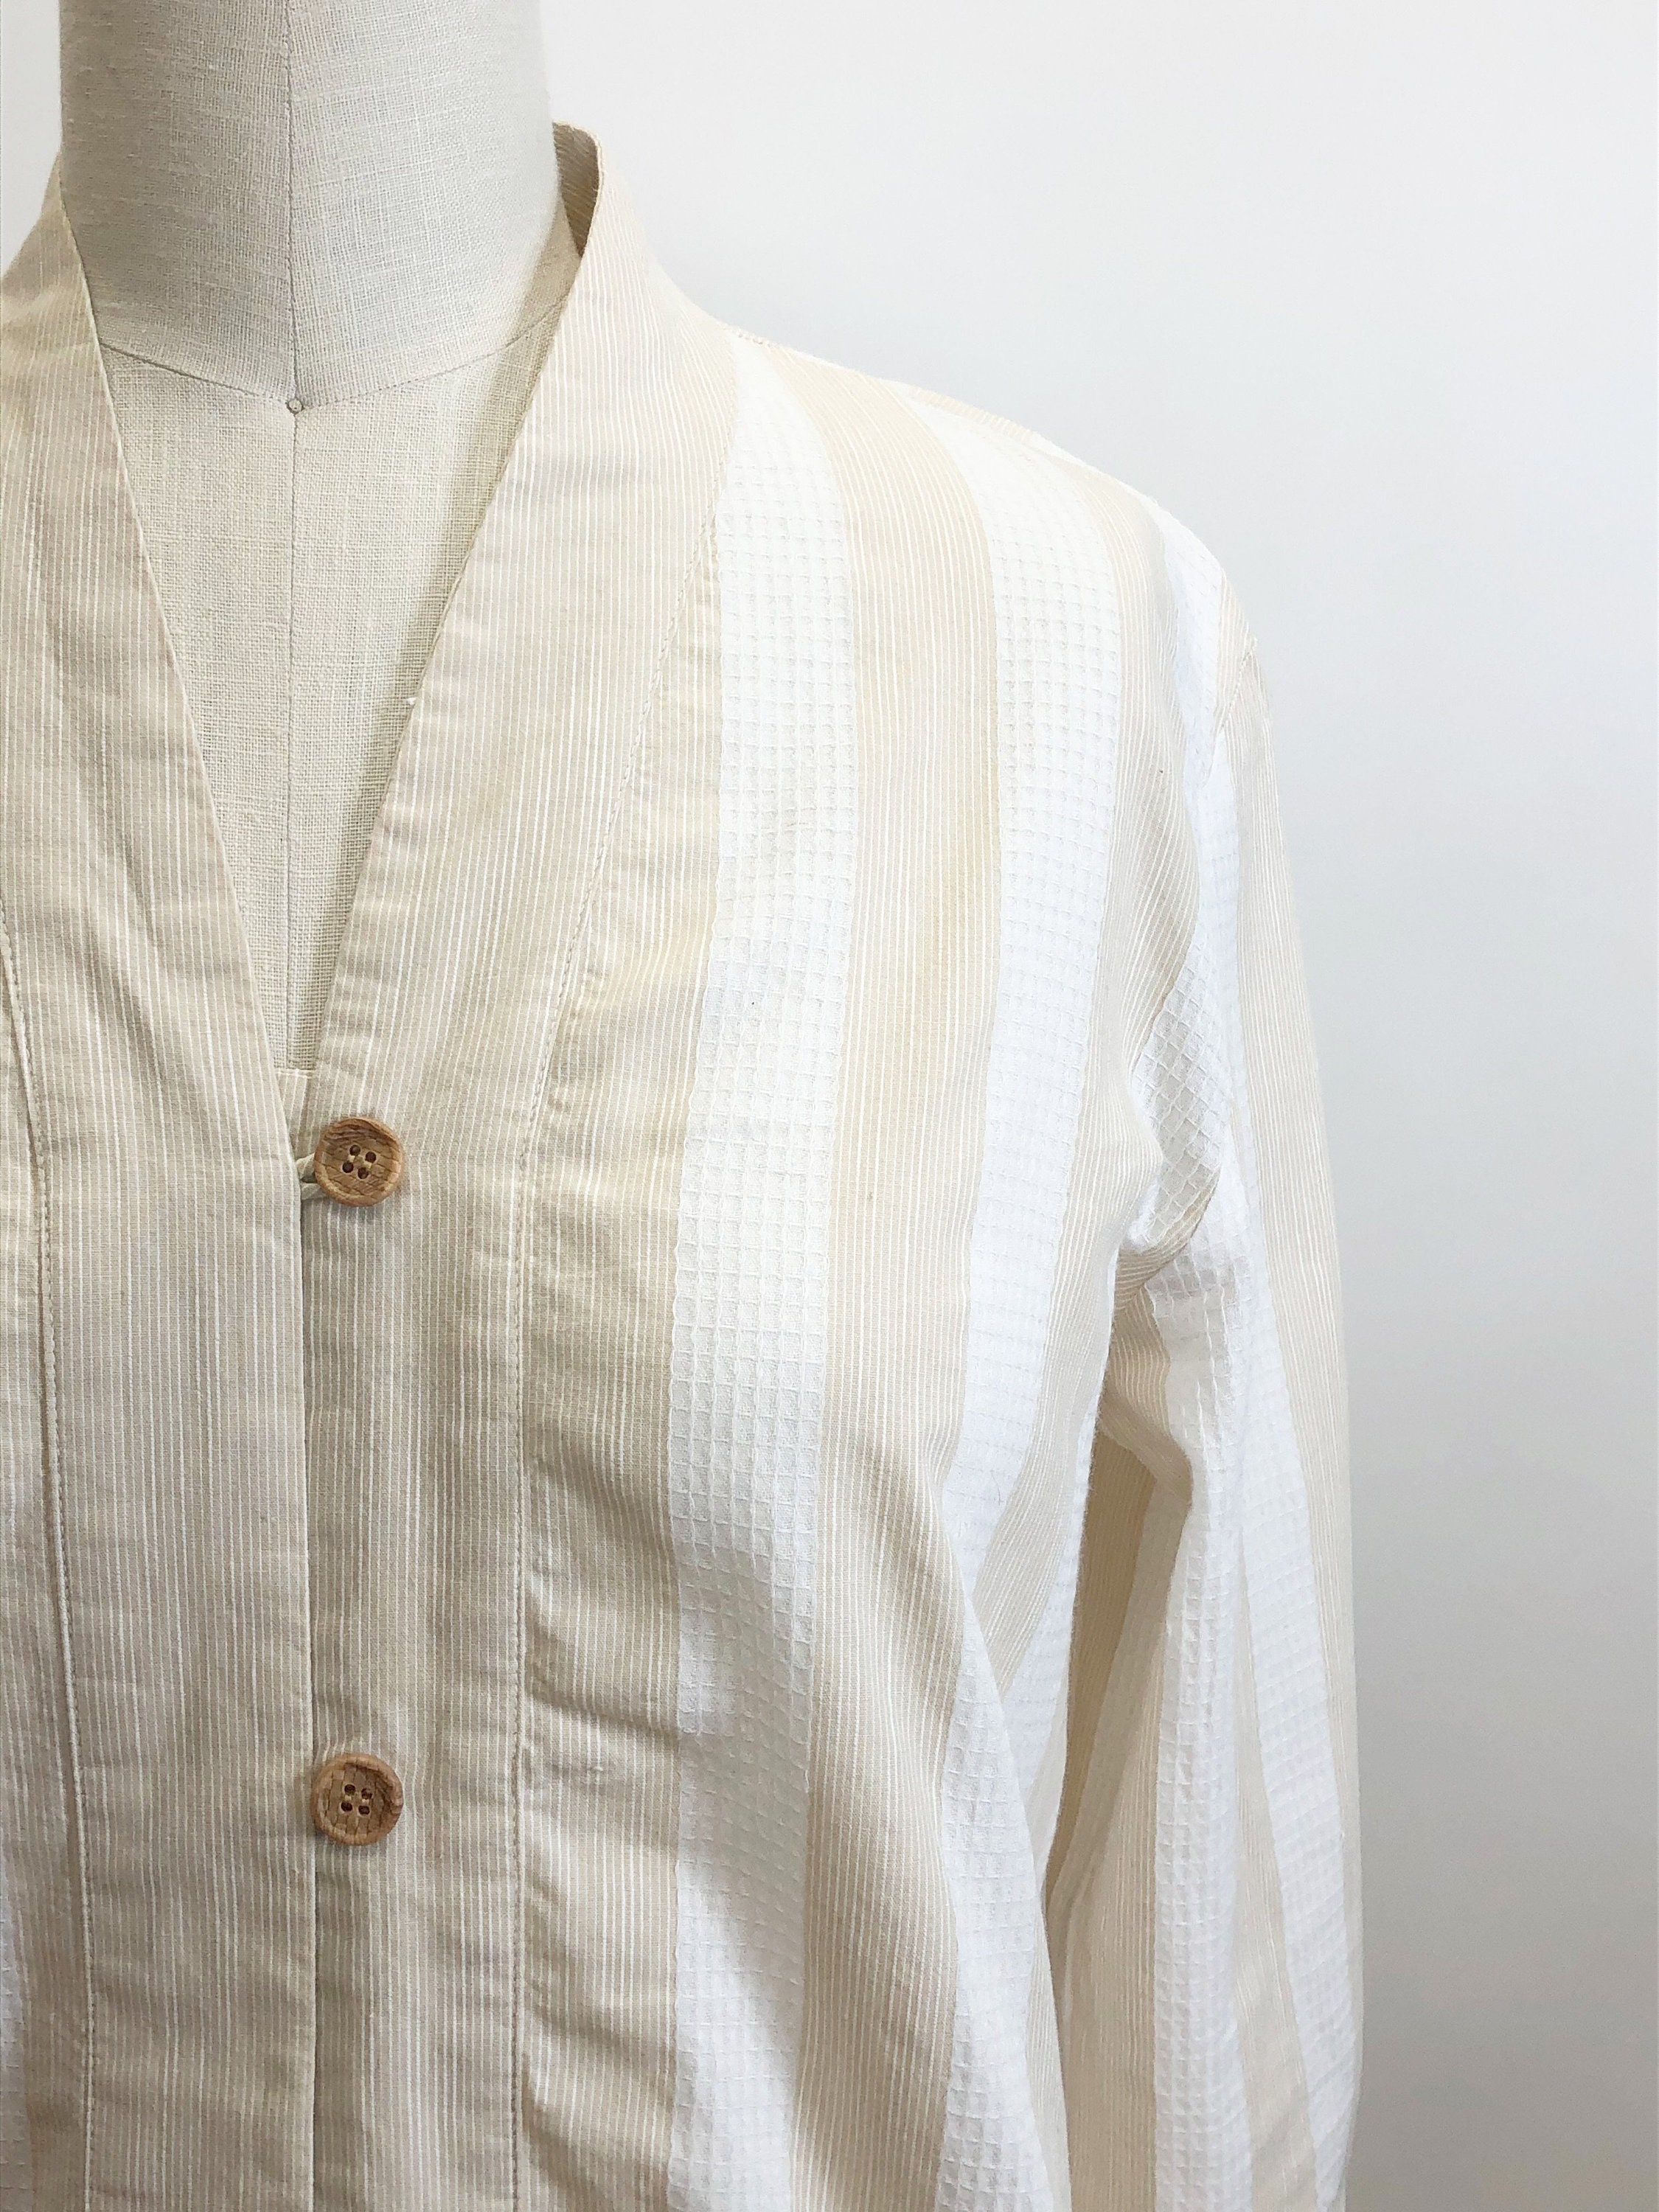 White Linen Shirt KARL, Linen Shirt with Buttons, Men's Shirt, Adjustable  Sleeve Shirt, Gift, Summer Linen Shirt, Long Sleeve Men's Shirt